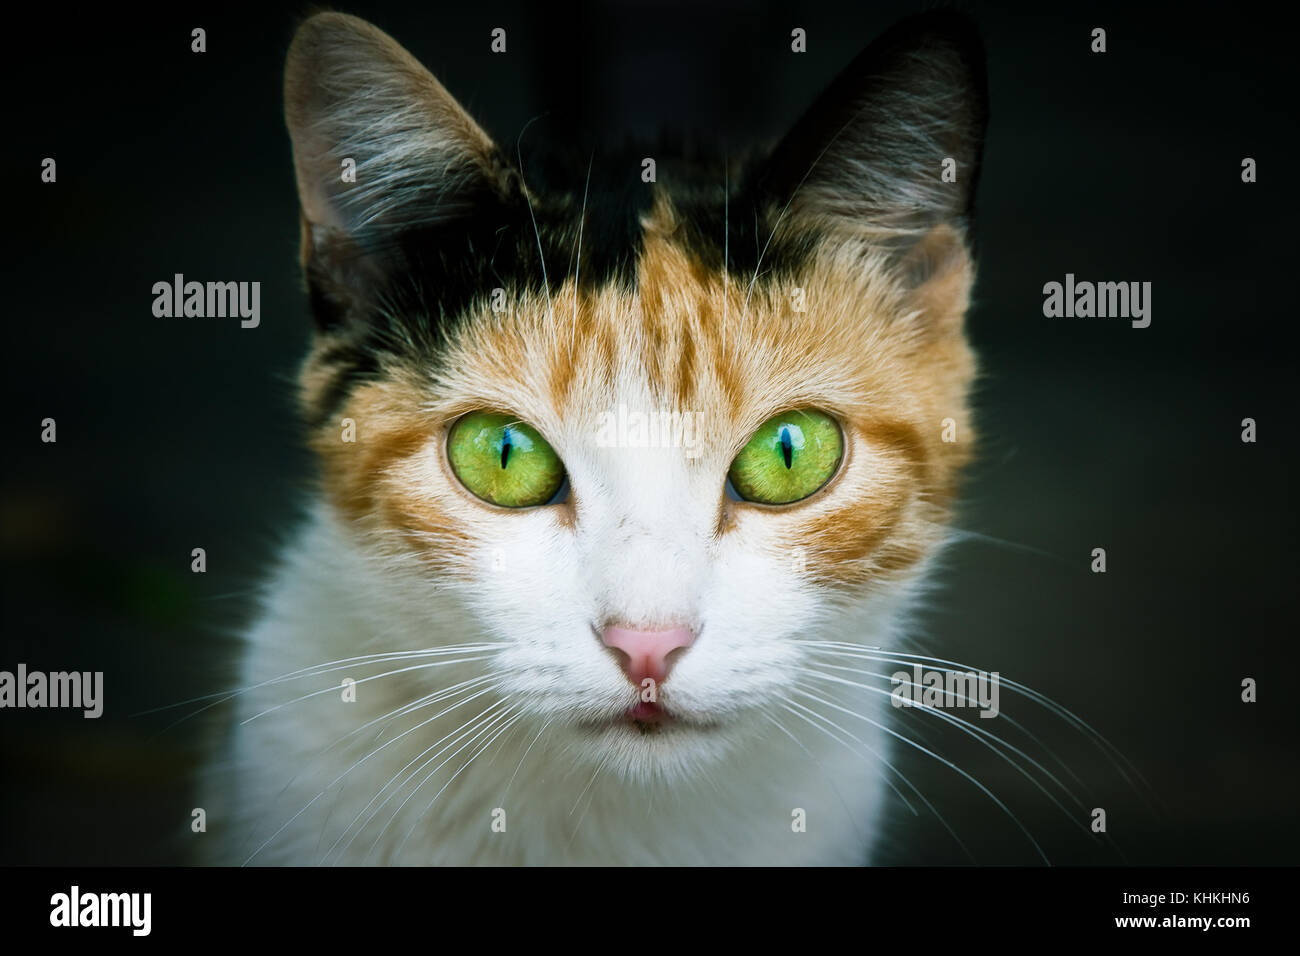 Katze portrait Nahaufnahme Betonung der grün gefärbt und gelbe Augen in die  Kamera starrte und dunkelgrünen Hintergrund weitgehend aus der Schwerpunkt  aufgrund Stockfotografie - Alamy